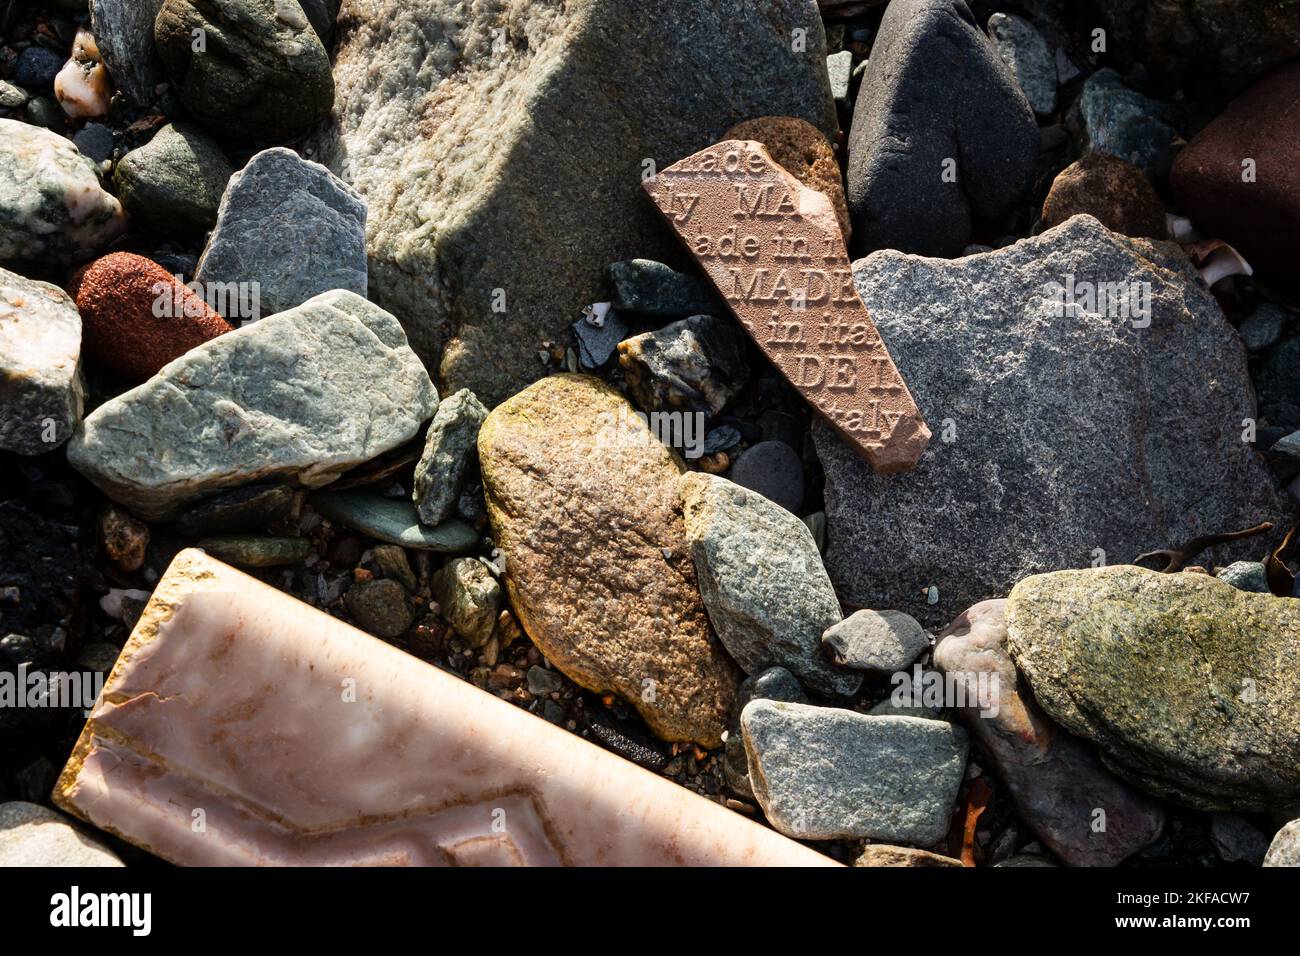 Nahaufnahme von Steinen und Trümmern am Strand mit einem Keramikfragment, das sagt: „Made in Italy“ Stockfoto